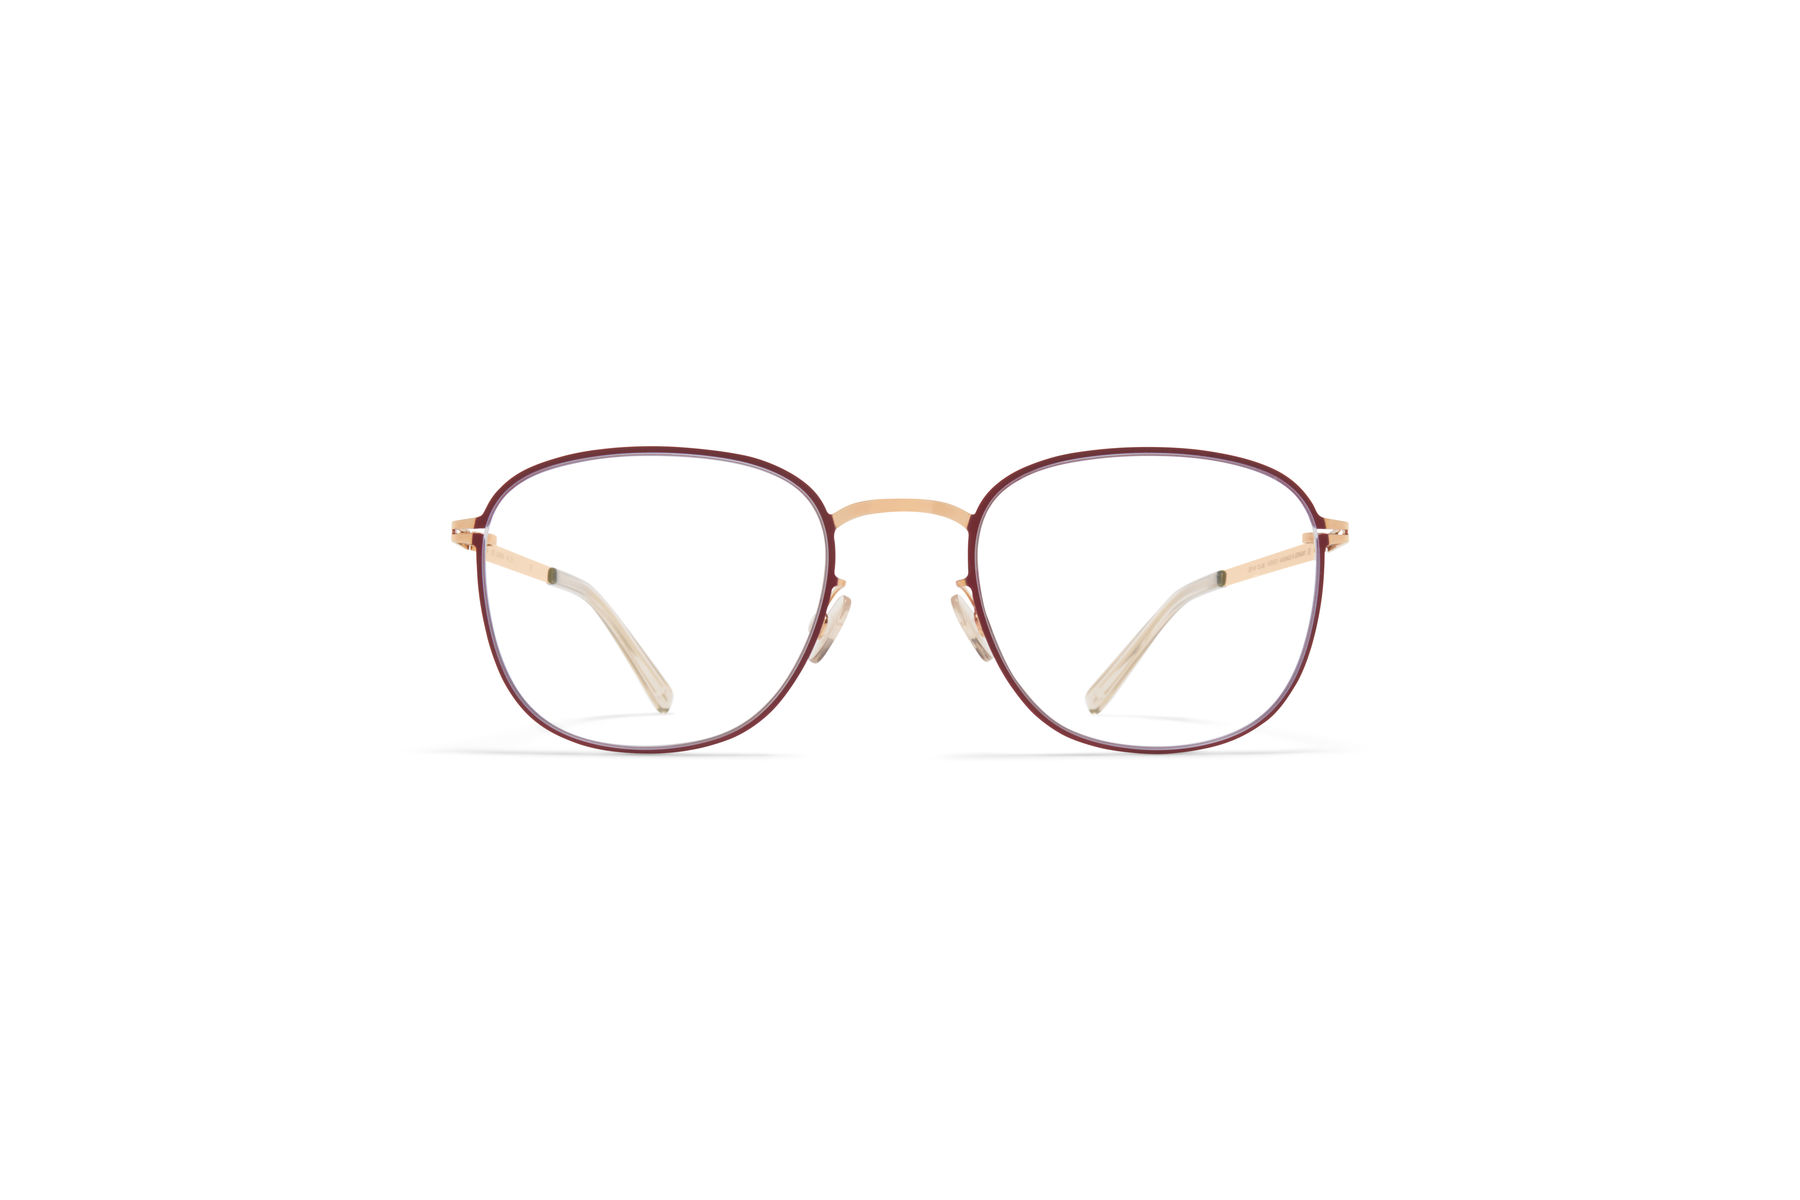 Acetate Glasses Frames for Men and Women - MYKITA